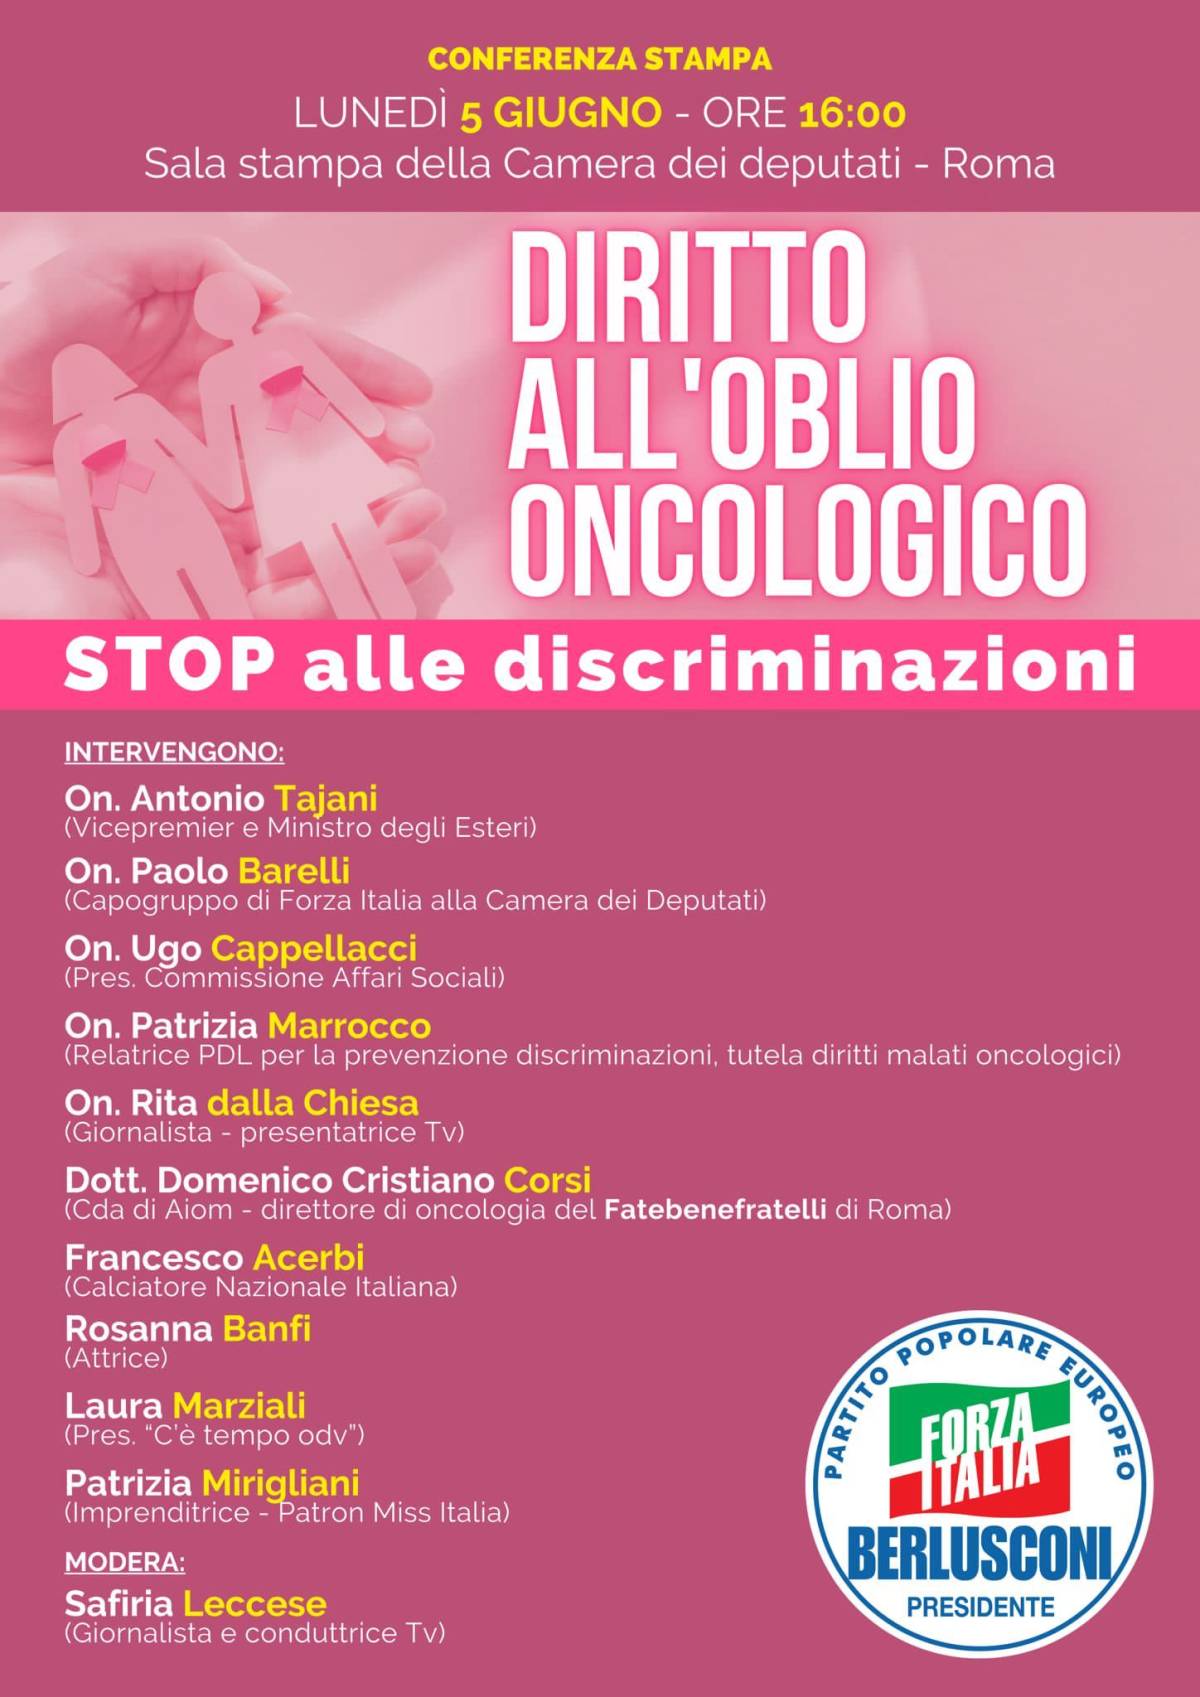 Diritto all'oblio oncologico, stop alle discriminazioni: una legge di civiltà e libertà